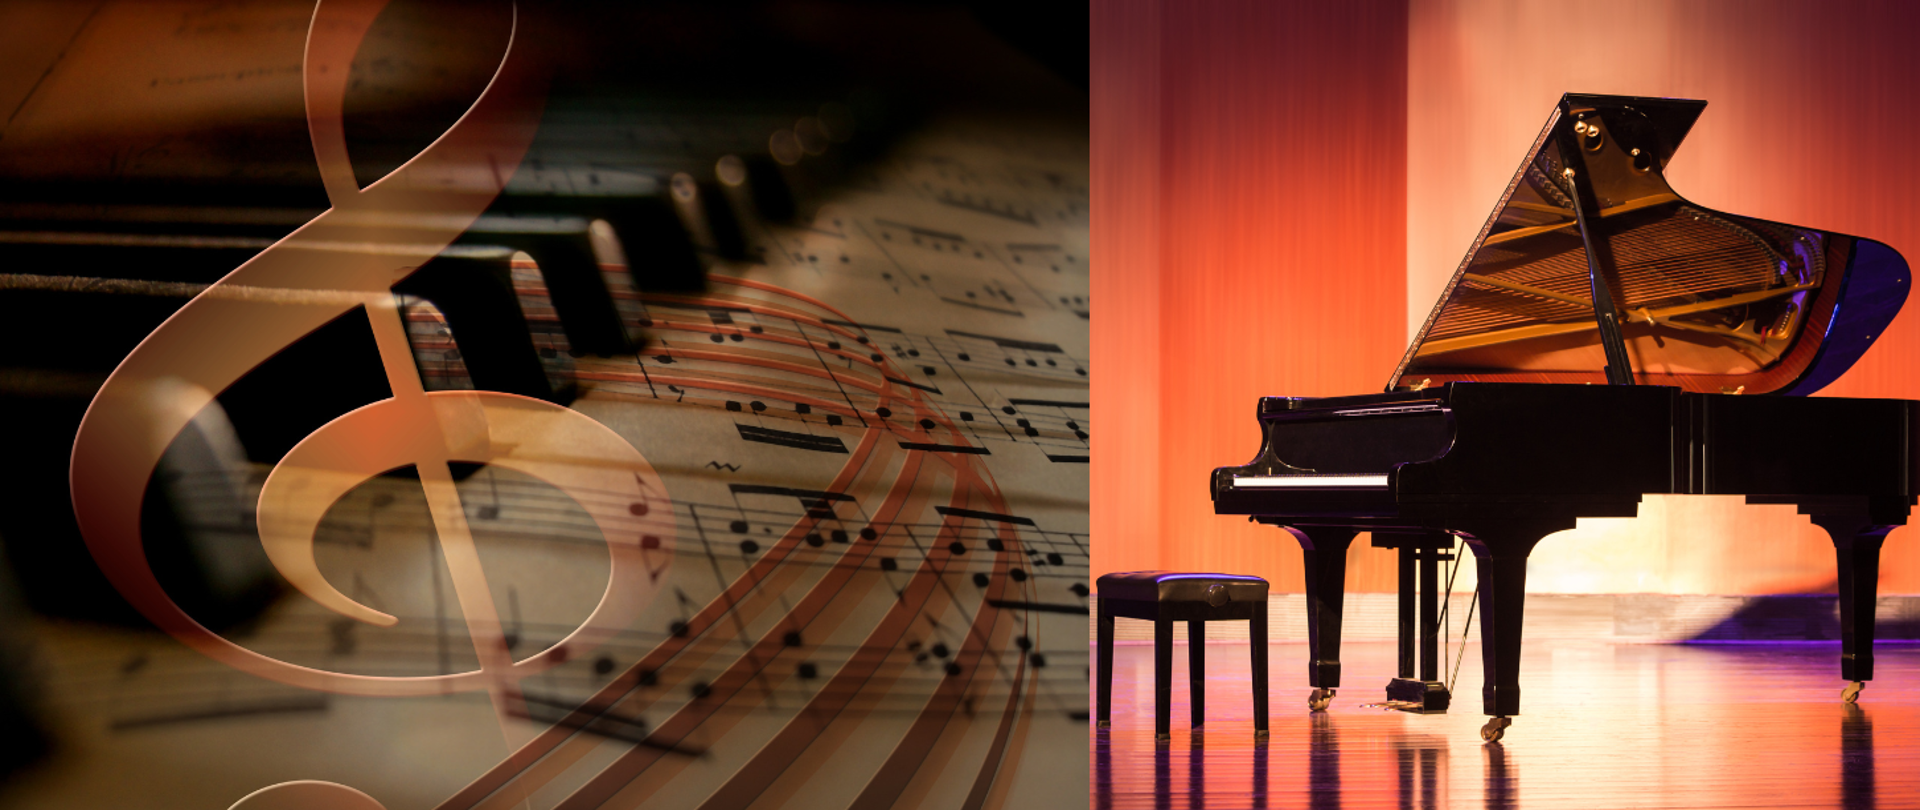 z lewej strony znajduję się zdjęcie klawiszy fortepianu w tel nuty, po prawej strony zdjęcie fortepianu